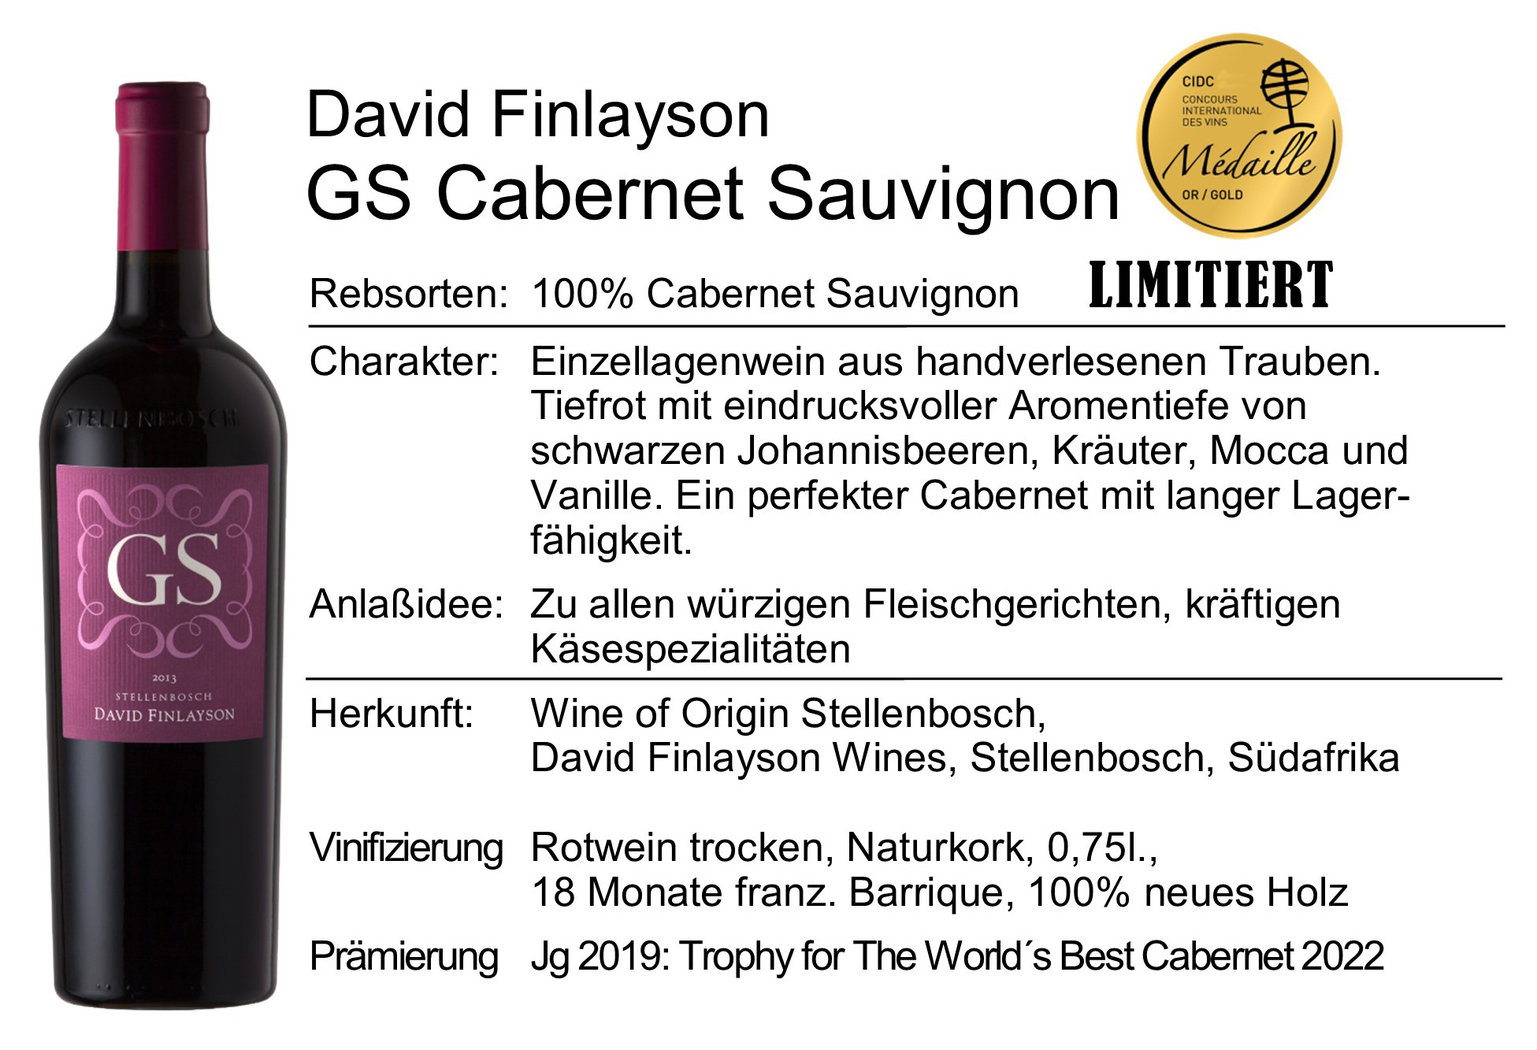 David Finlayson GS Cabernet Sauvignon 2020